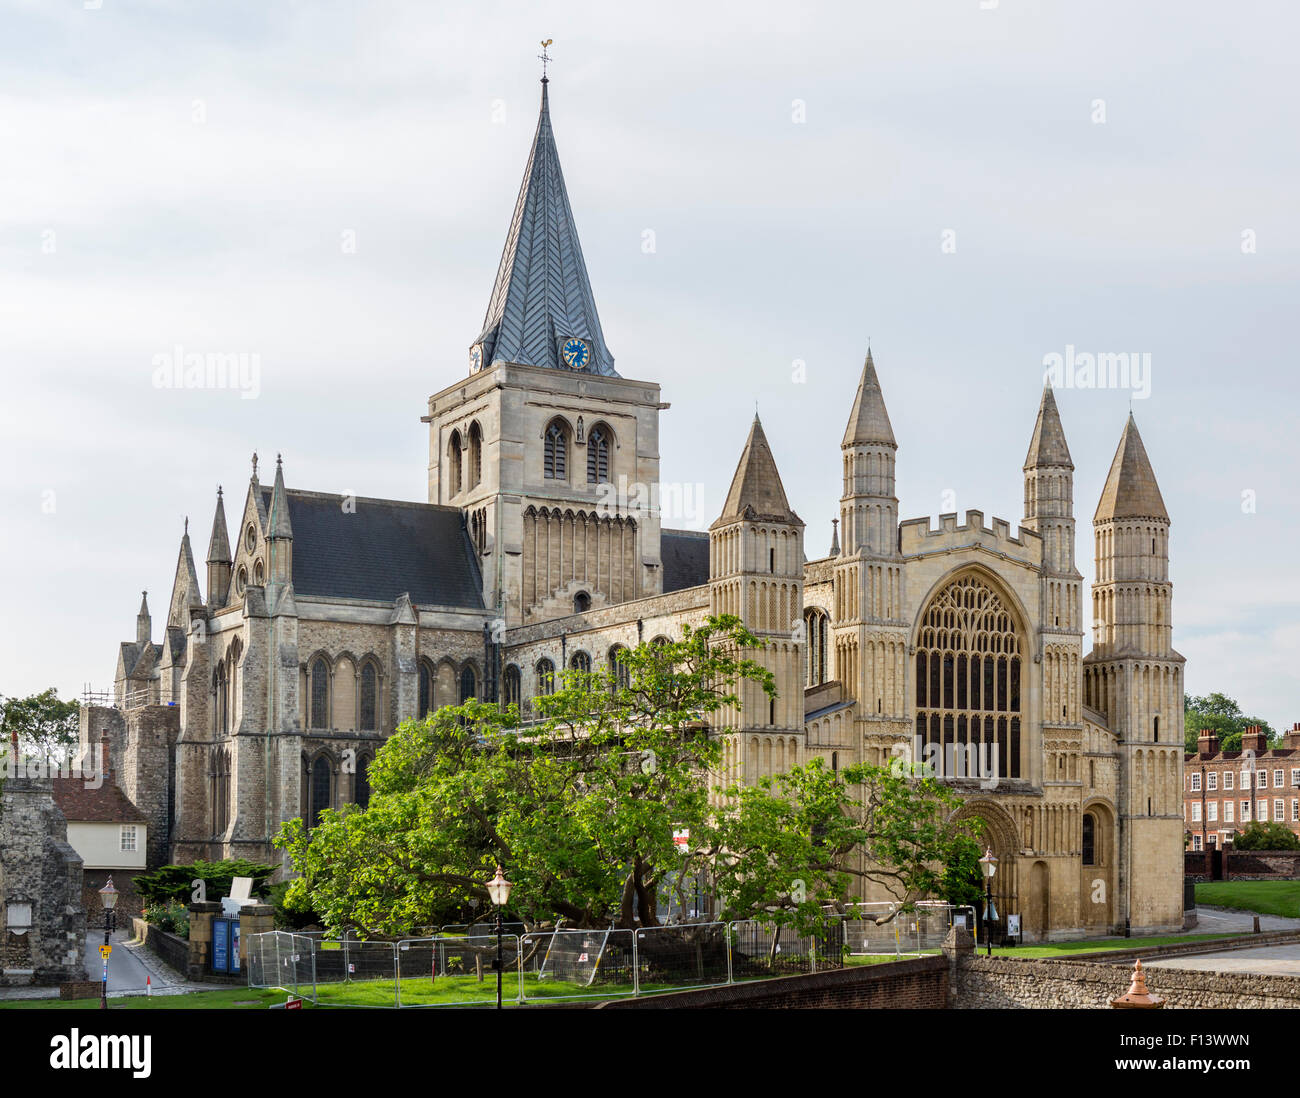 La Cathédrale de Rochester (la cathédrale de l'Église du Christ et de la Bienheureuse Vierge Marie), Rochester, Kent, England, UK Banque D'Images